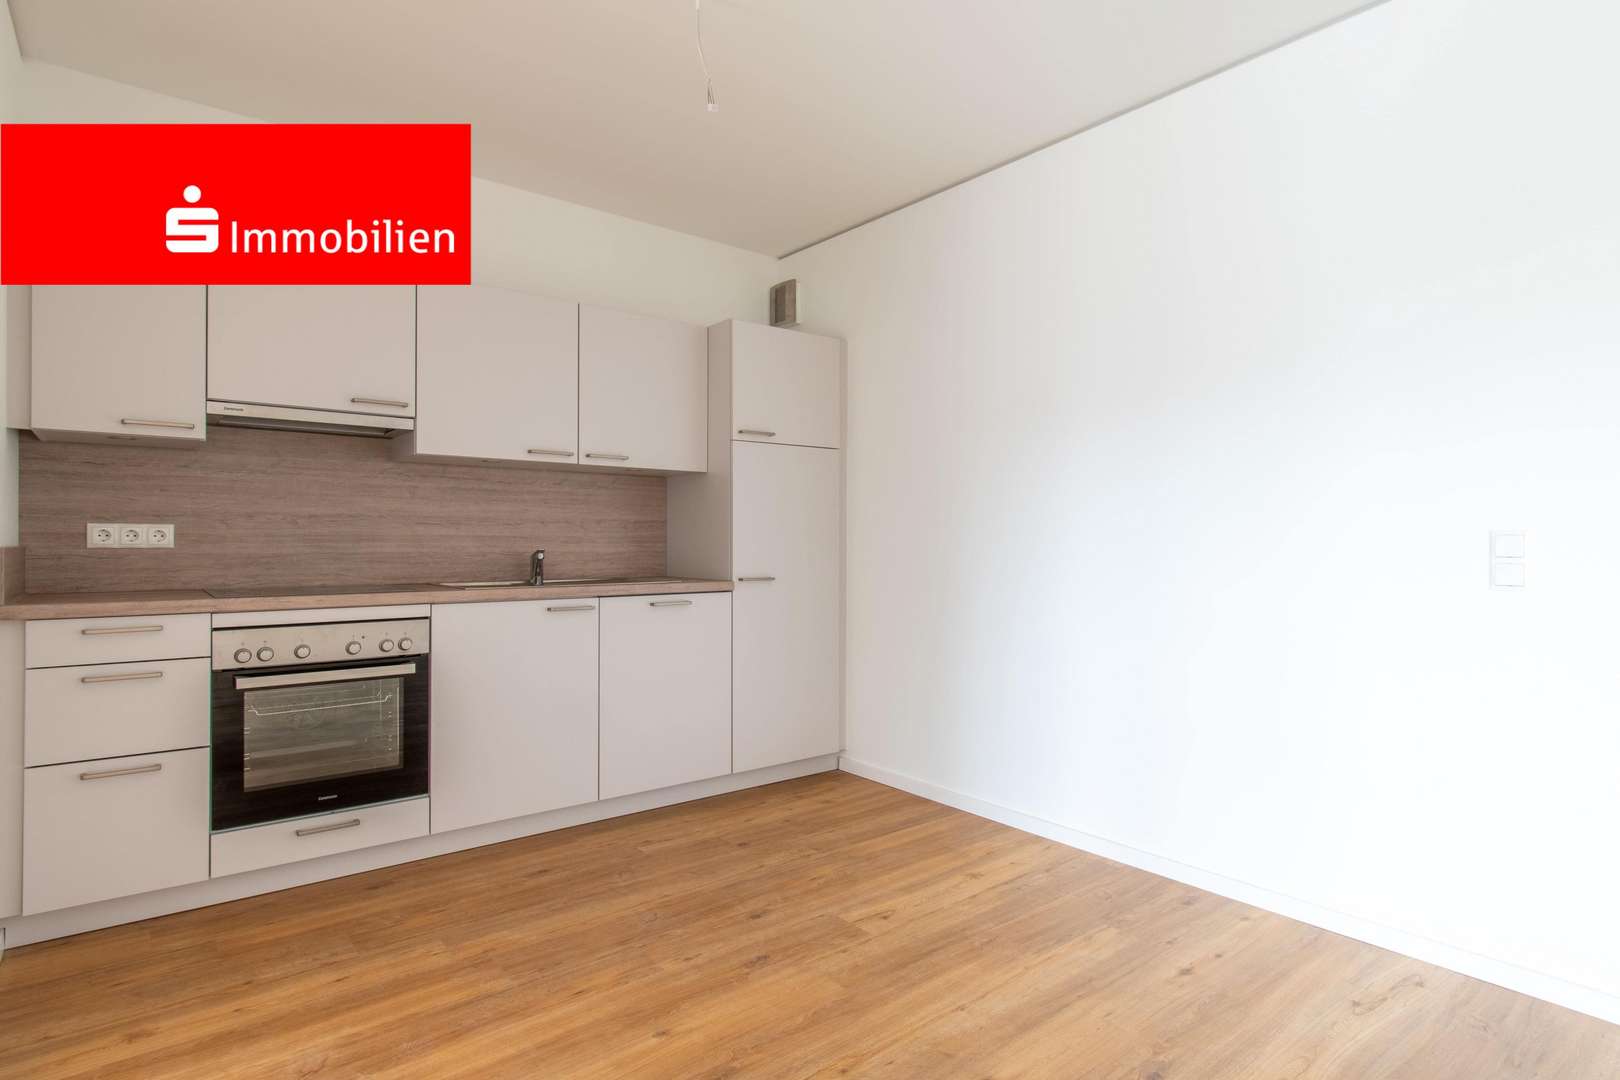 Wohn- und Esszimmer mit Küche - Etagenwohnung in 24211 Preetz mit 91m² mieten